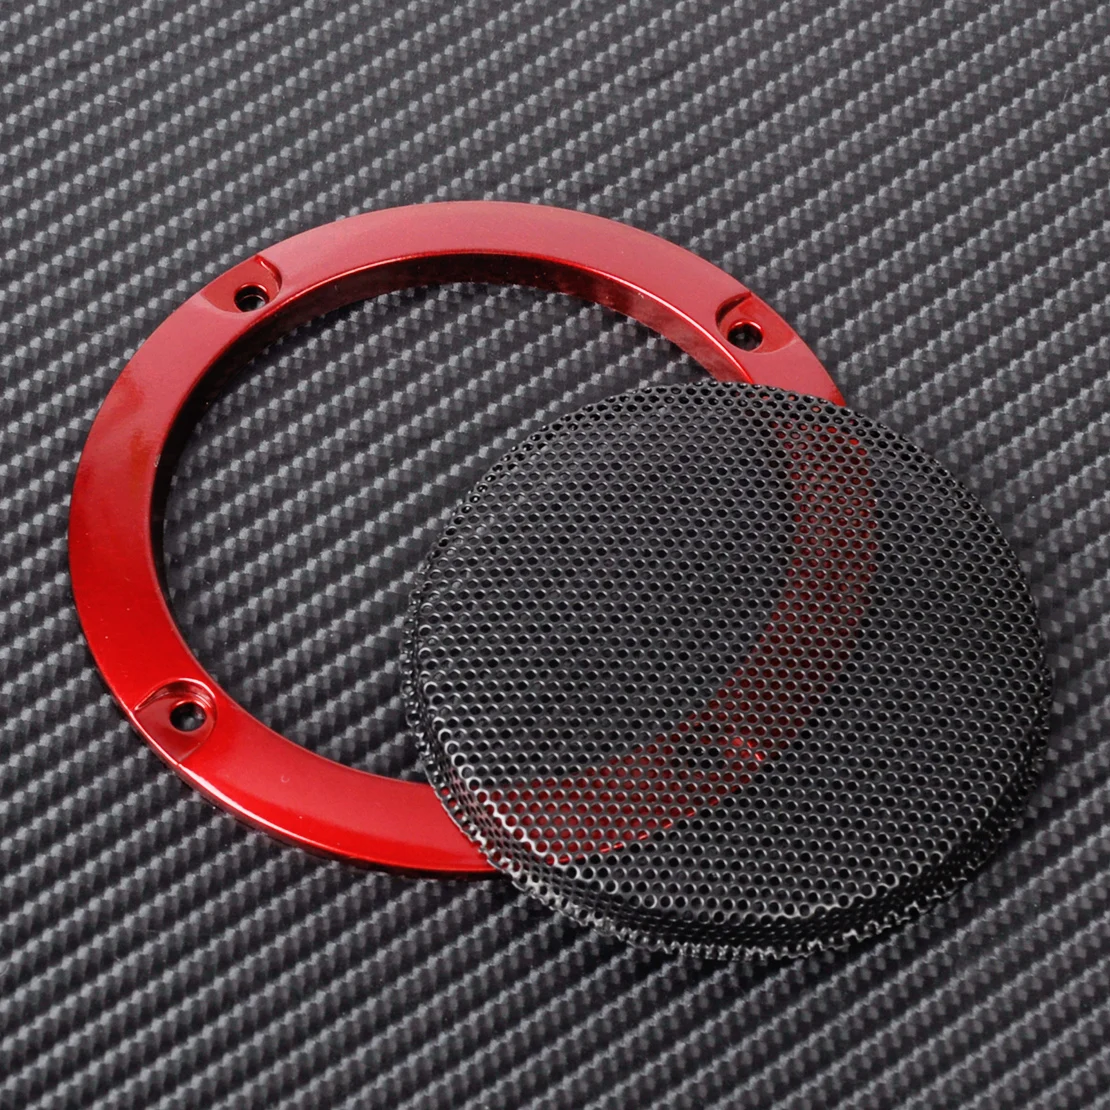 DWCX 2 шт. DIY ABS красный " динамик Декор защита круг крышка w/черная металлическая защитная решетка сетка для универсальных транспортных средств